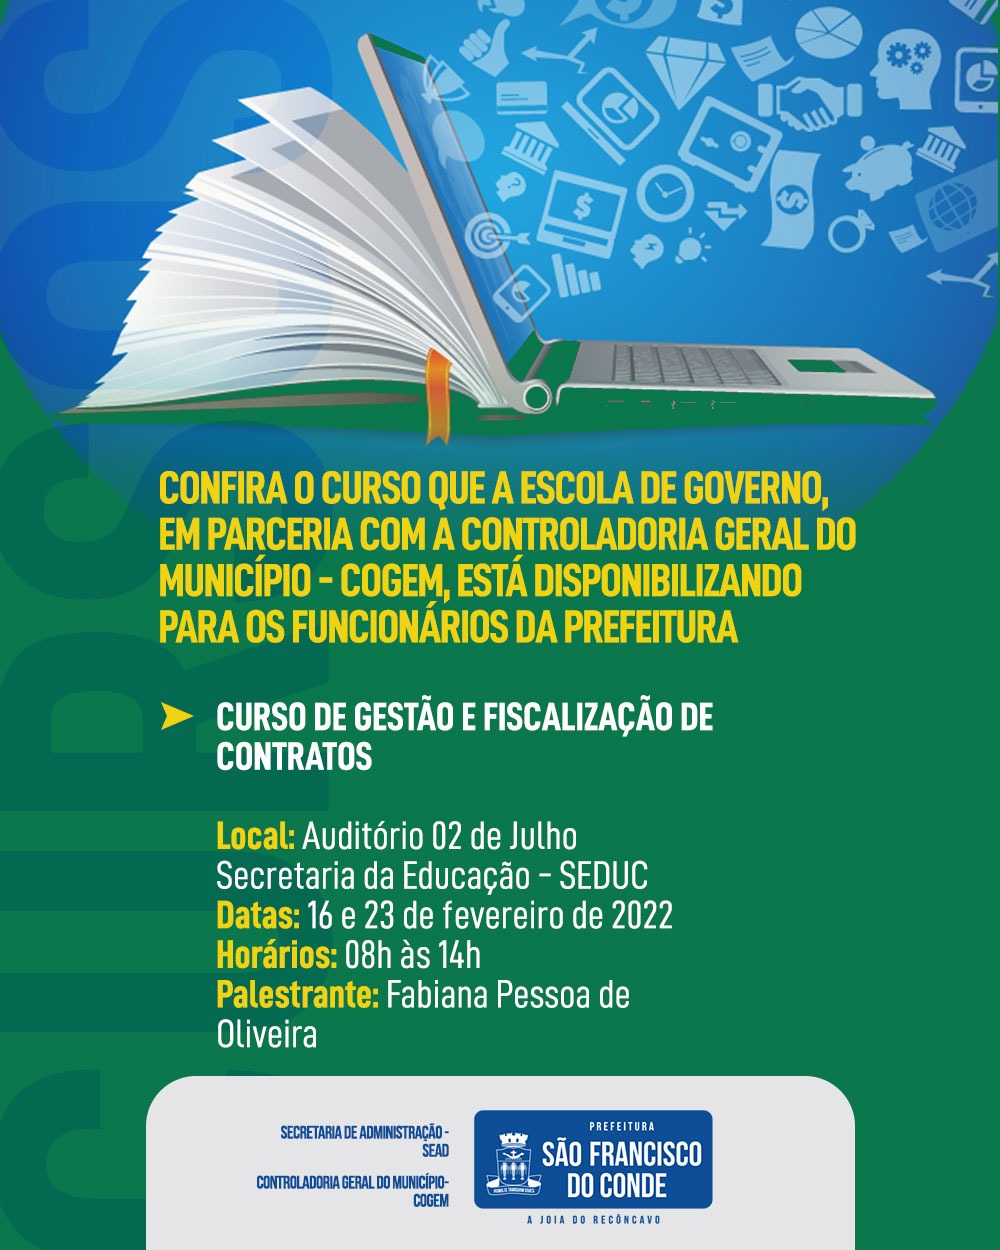 Escola de Governo promove cursos de gestão e fiscalização de contratos e redação oficial